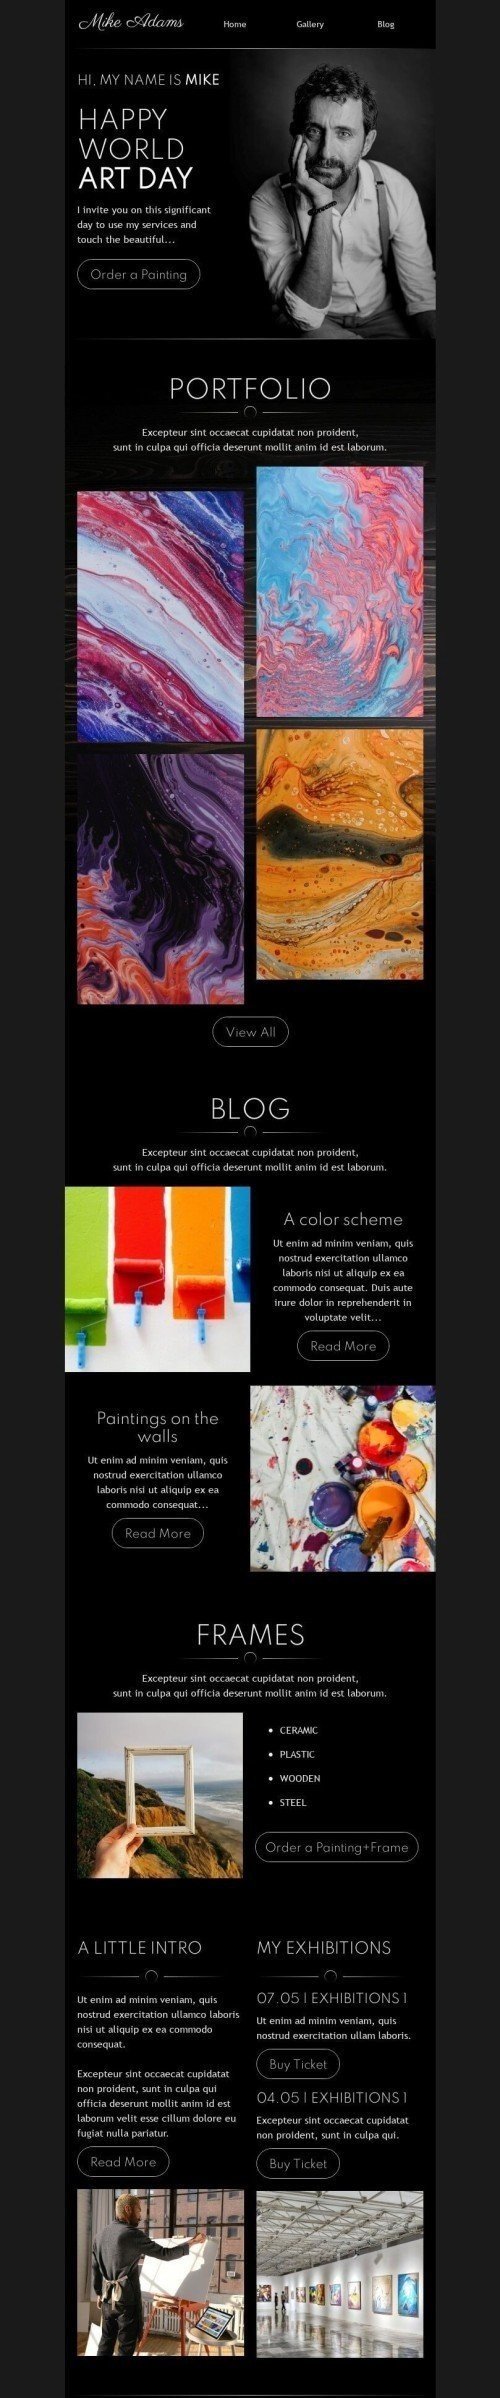 Weltkunsttag E-Mail-Vorlage «Berühre die Schönheit» für Kunstgalerie-Branche mobile view